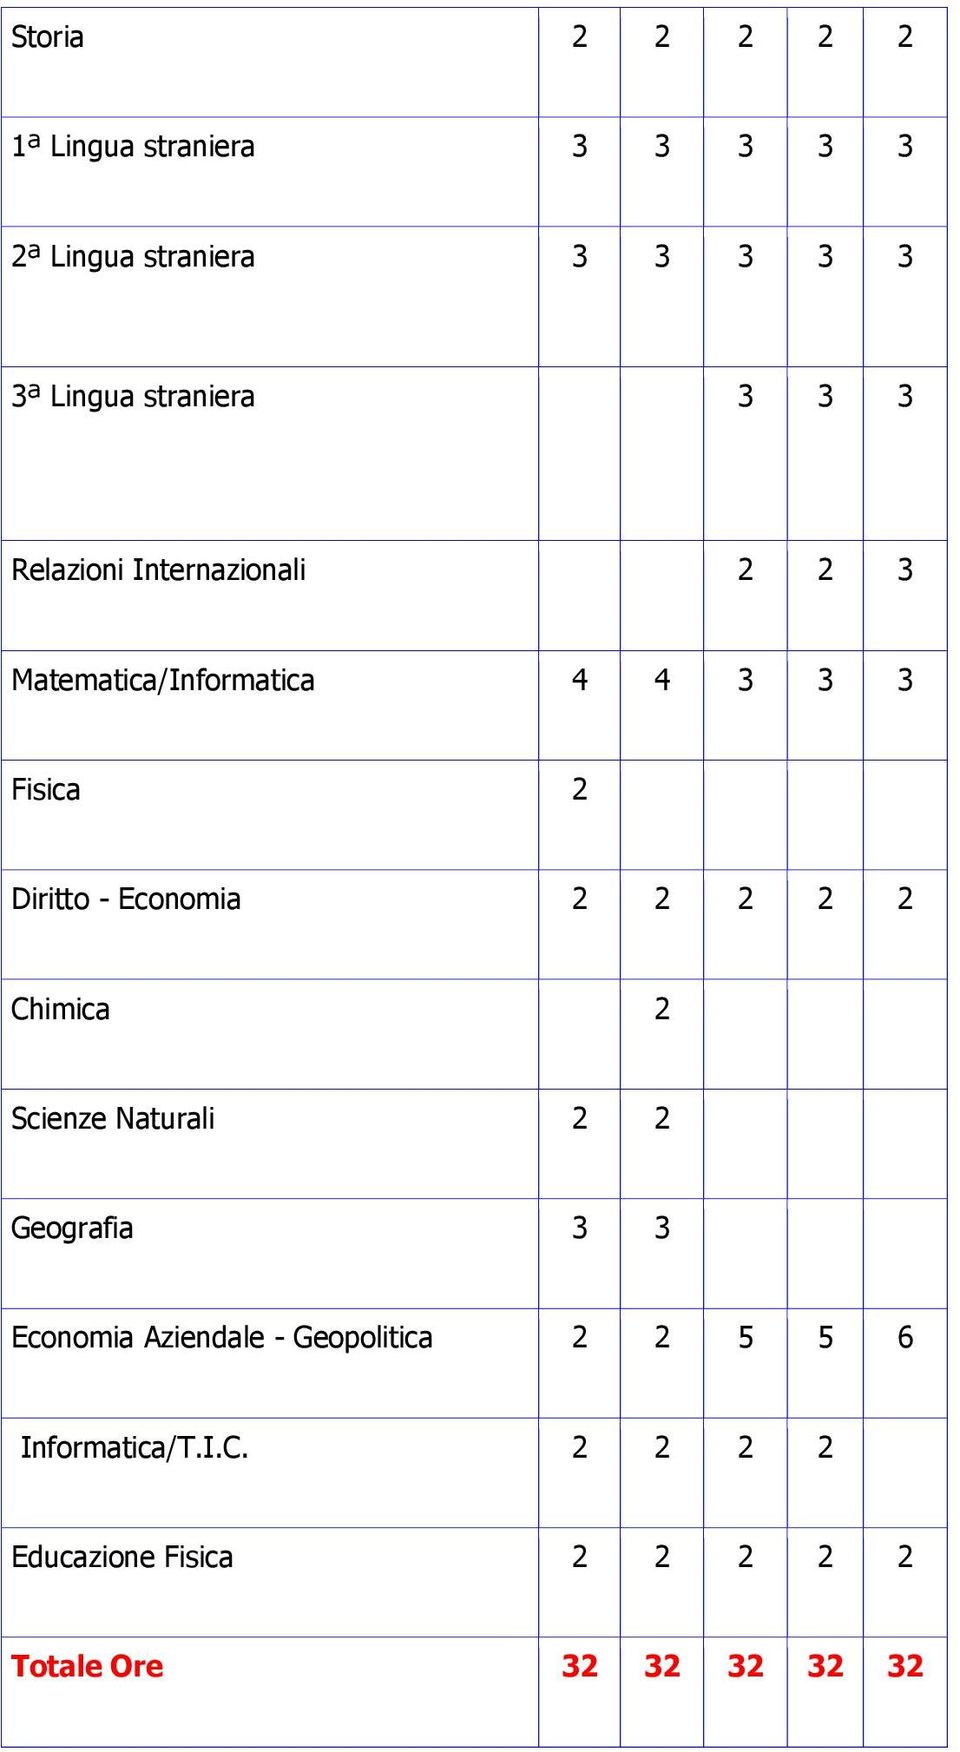 Chimica 2 Scienze Naturali 2 2 Geografia 3 3 Economia Aziendale - Geopolitica 2 2 5 5 6